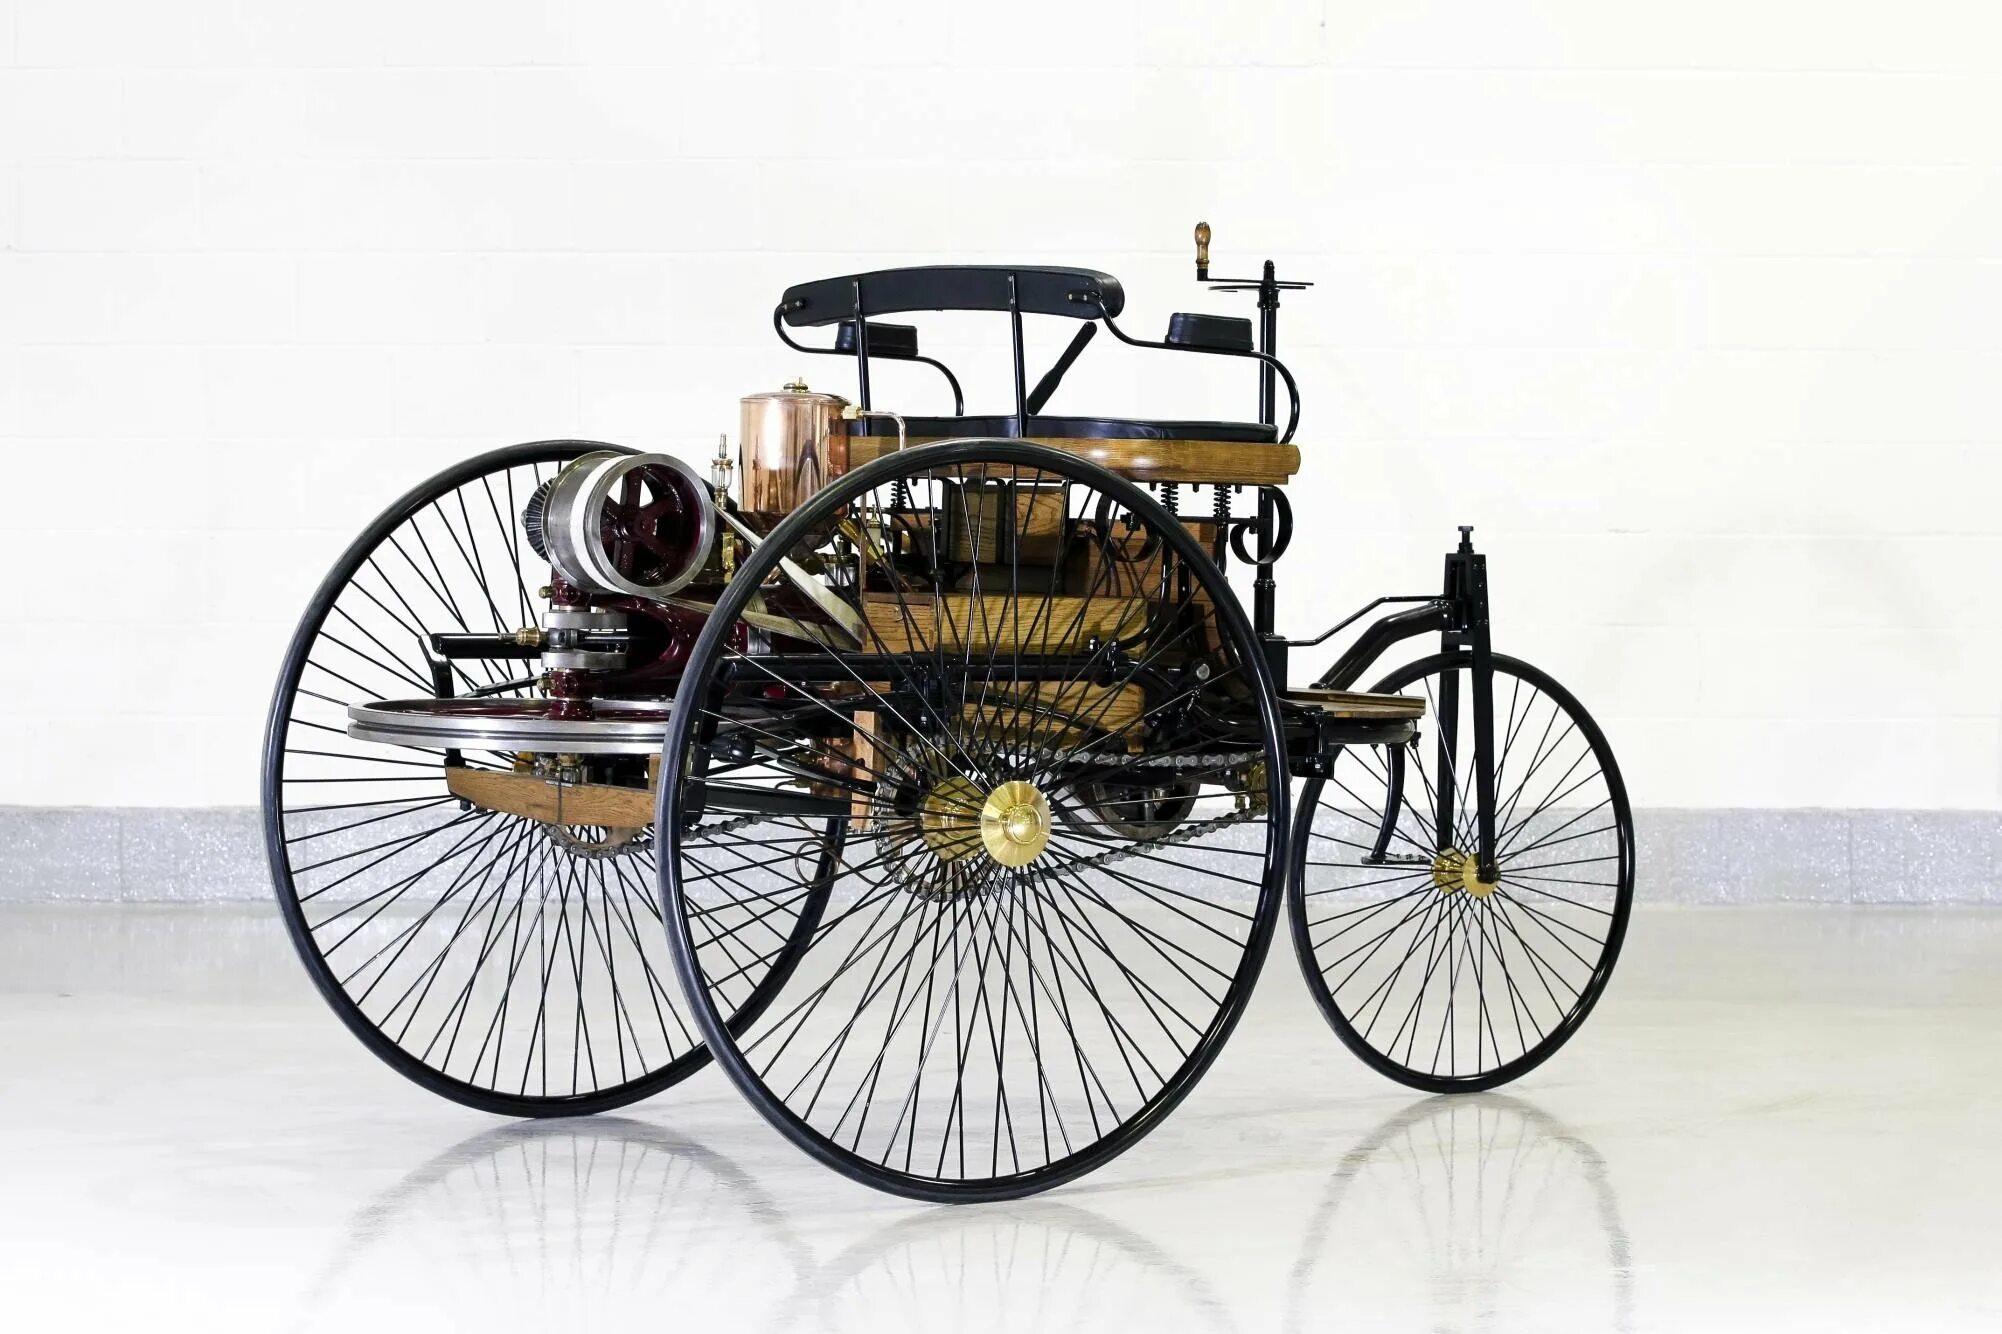 Акции первого автомобиля. Benz Patent-Motorwagen 1886. Benz Patent-Motorwagen 1886 двигатель.